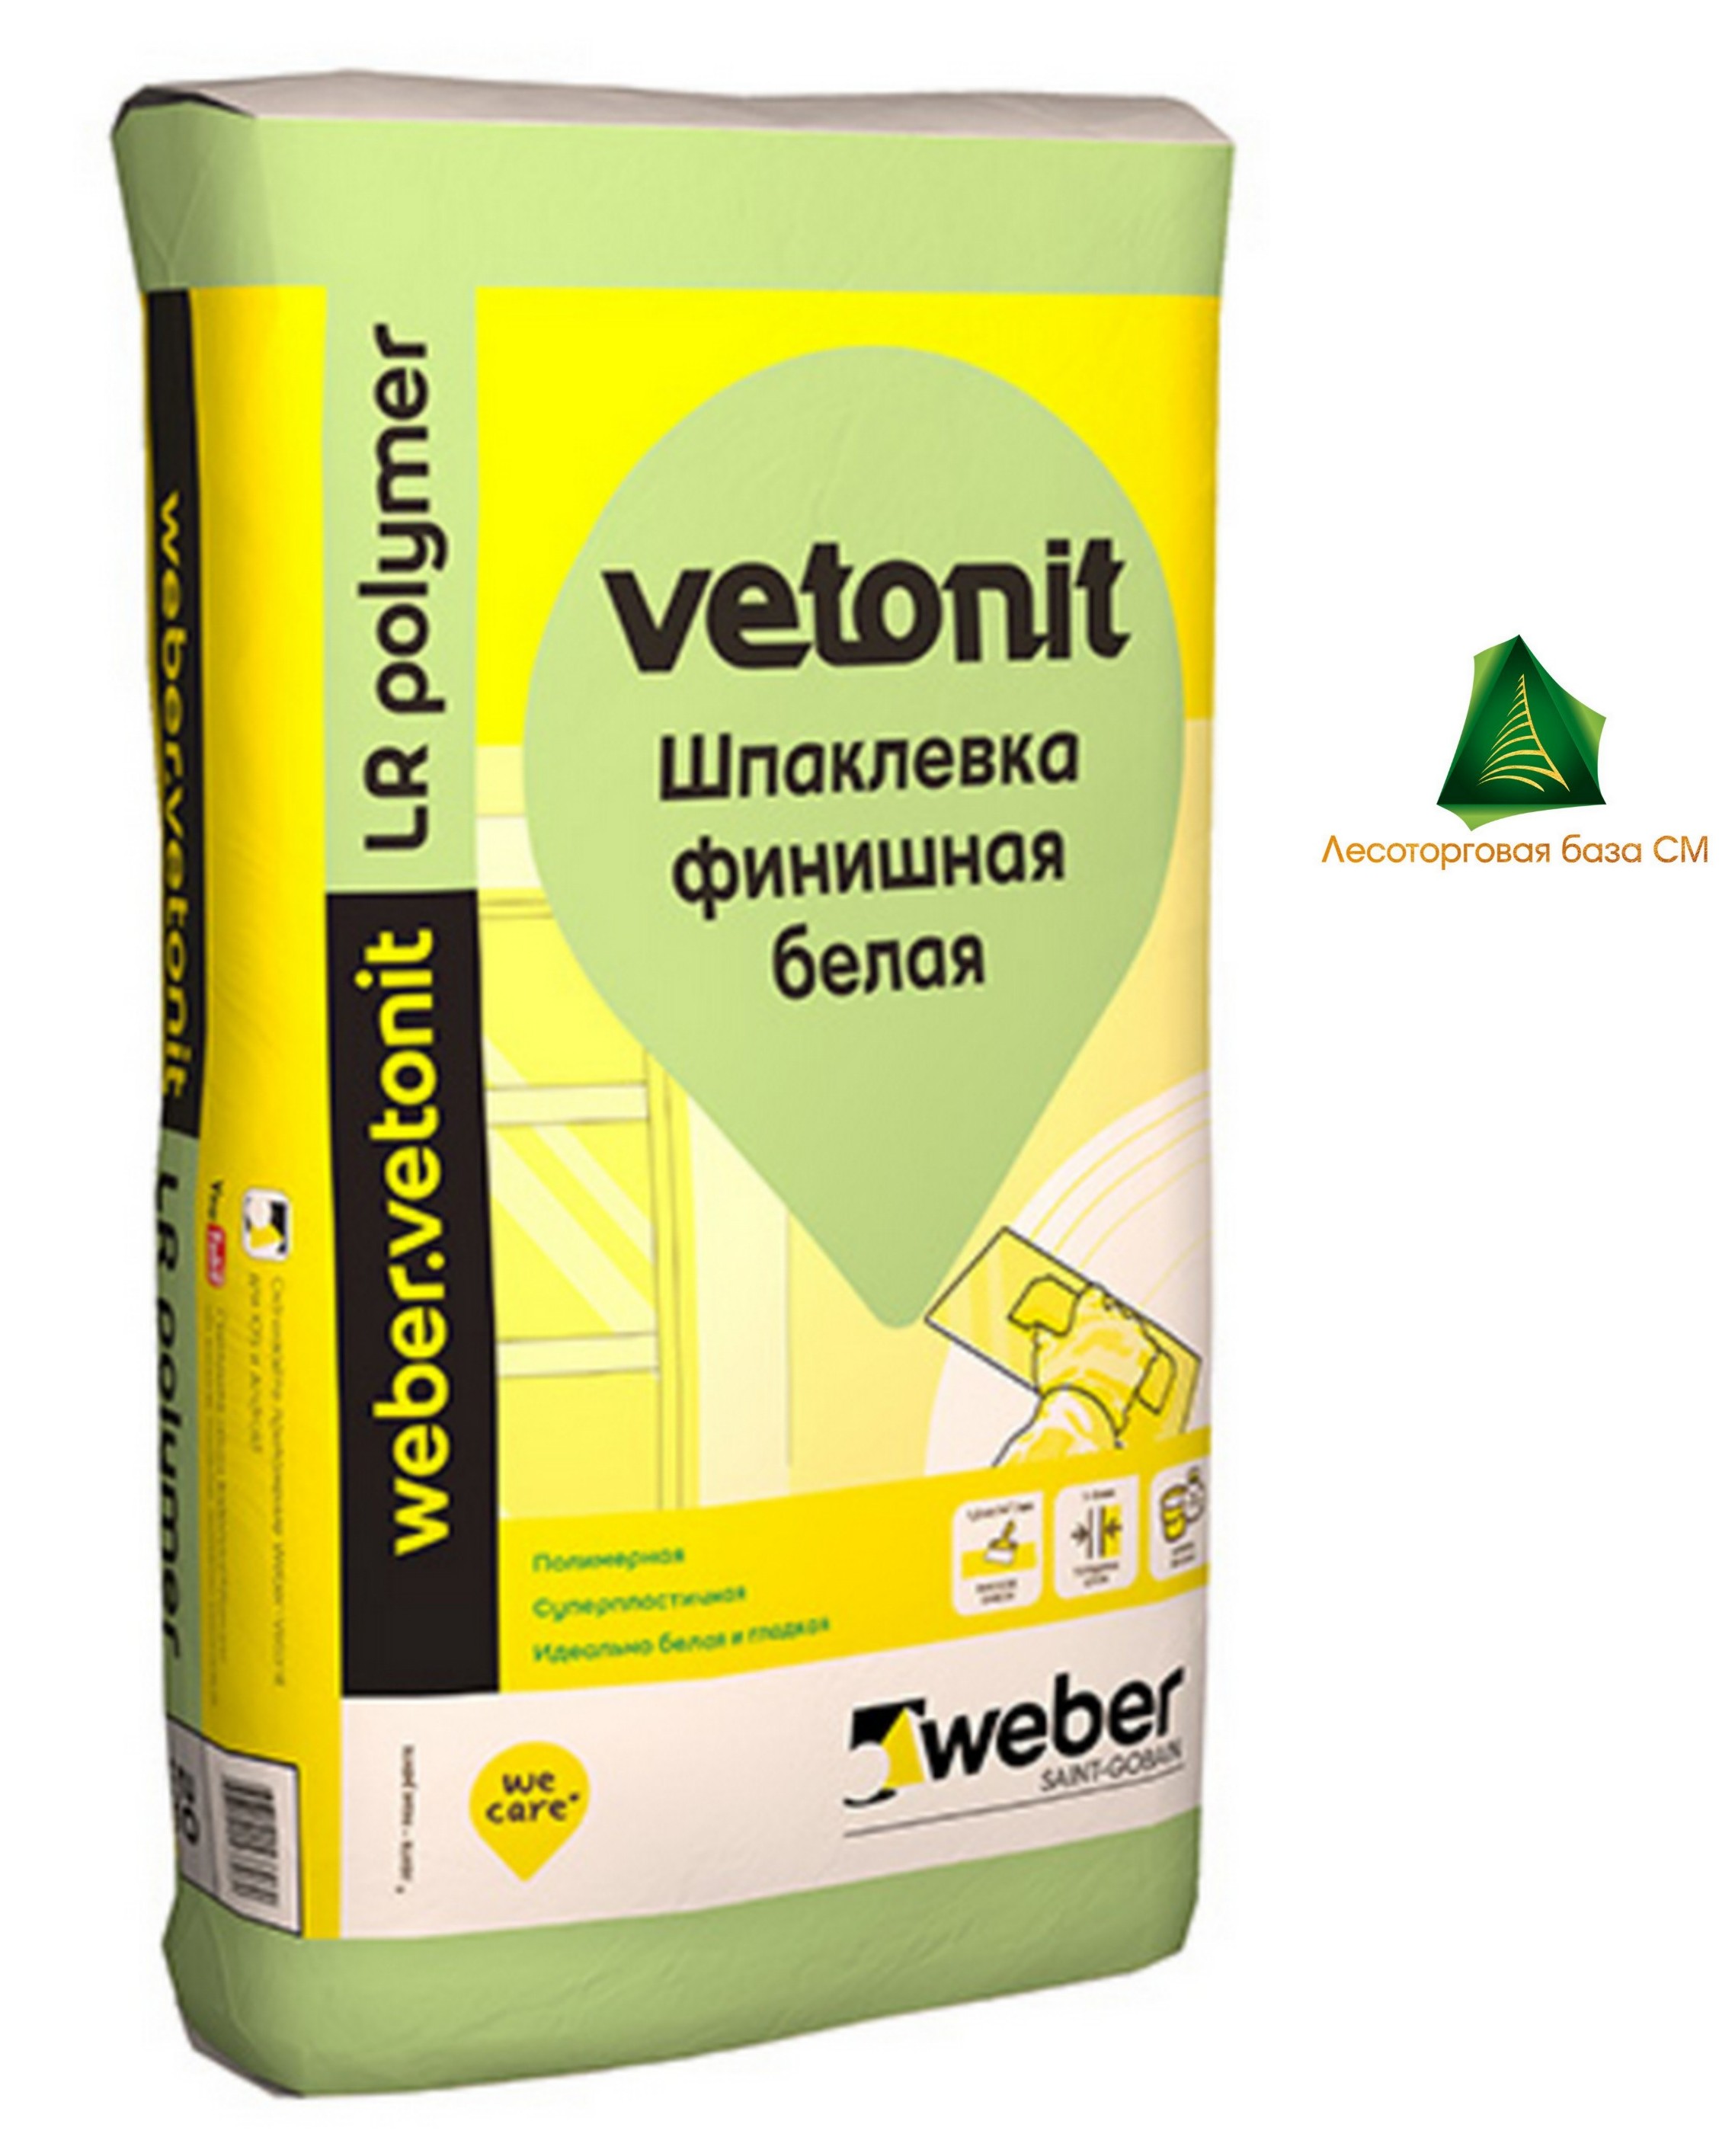 Шпаклевка полимерная Weber.vetonit LR + для сухих помещений белая 22 кг